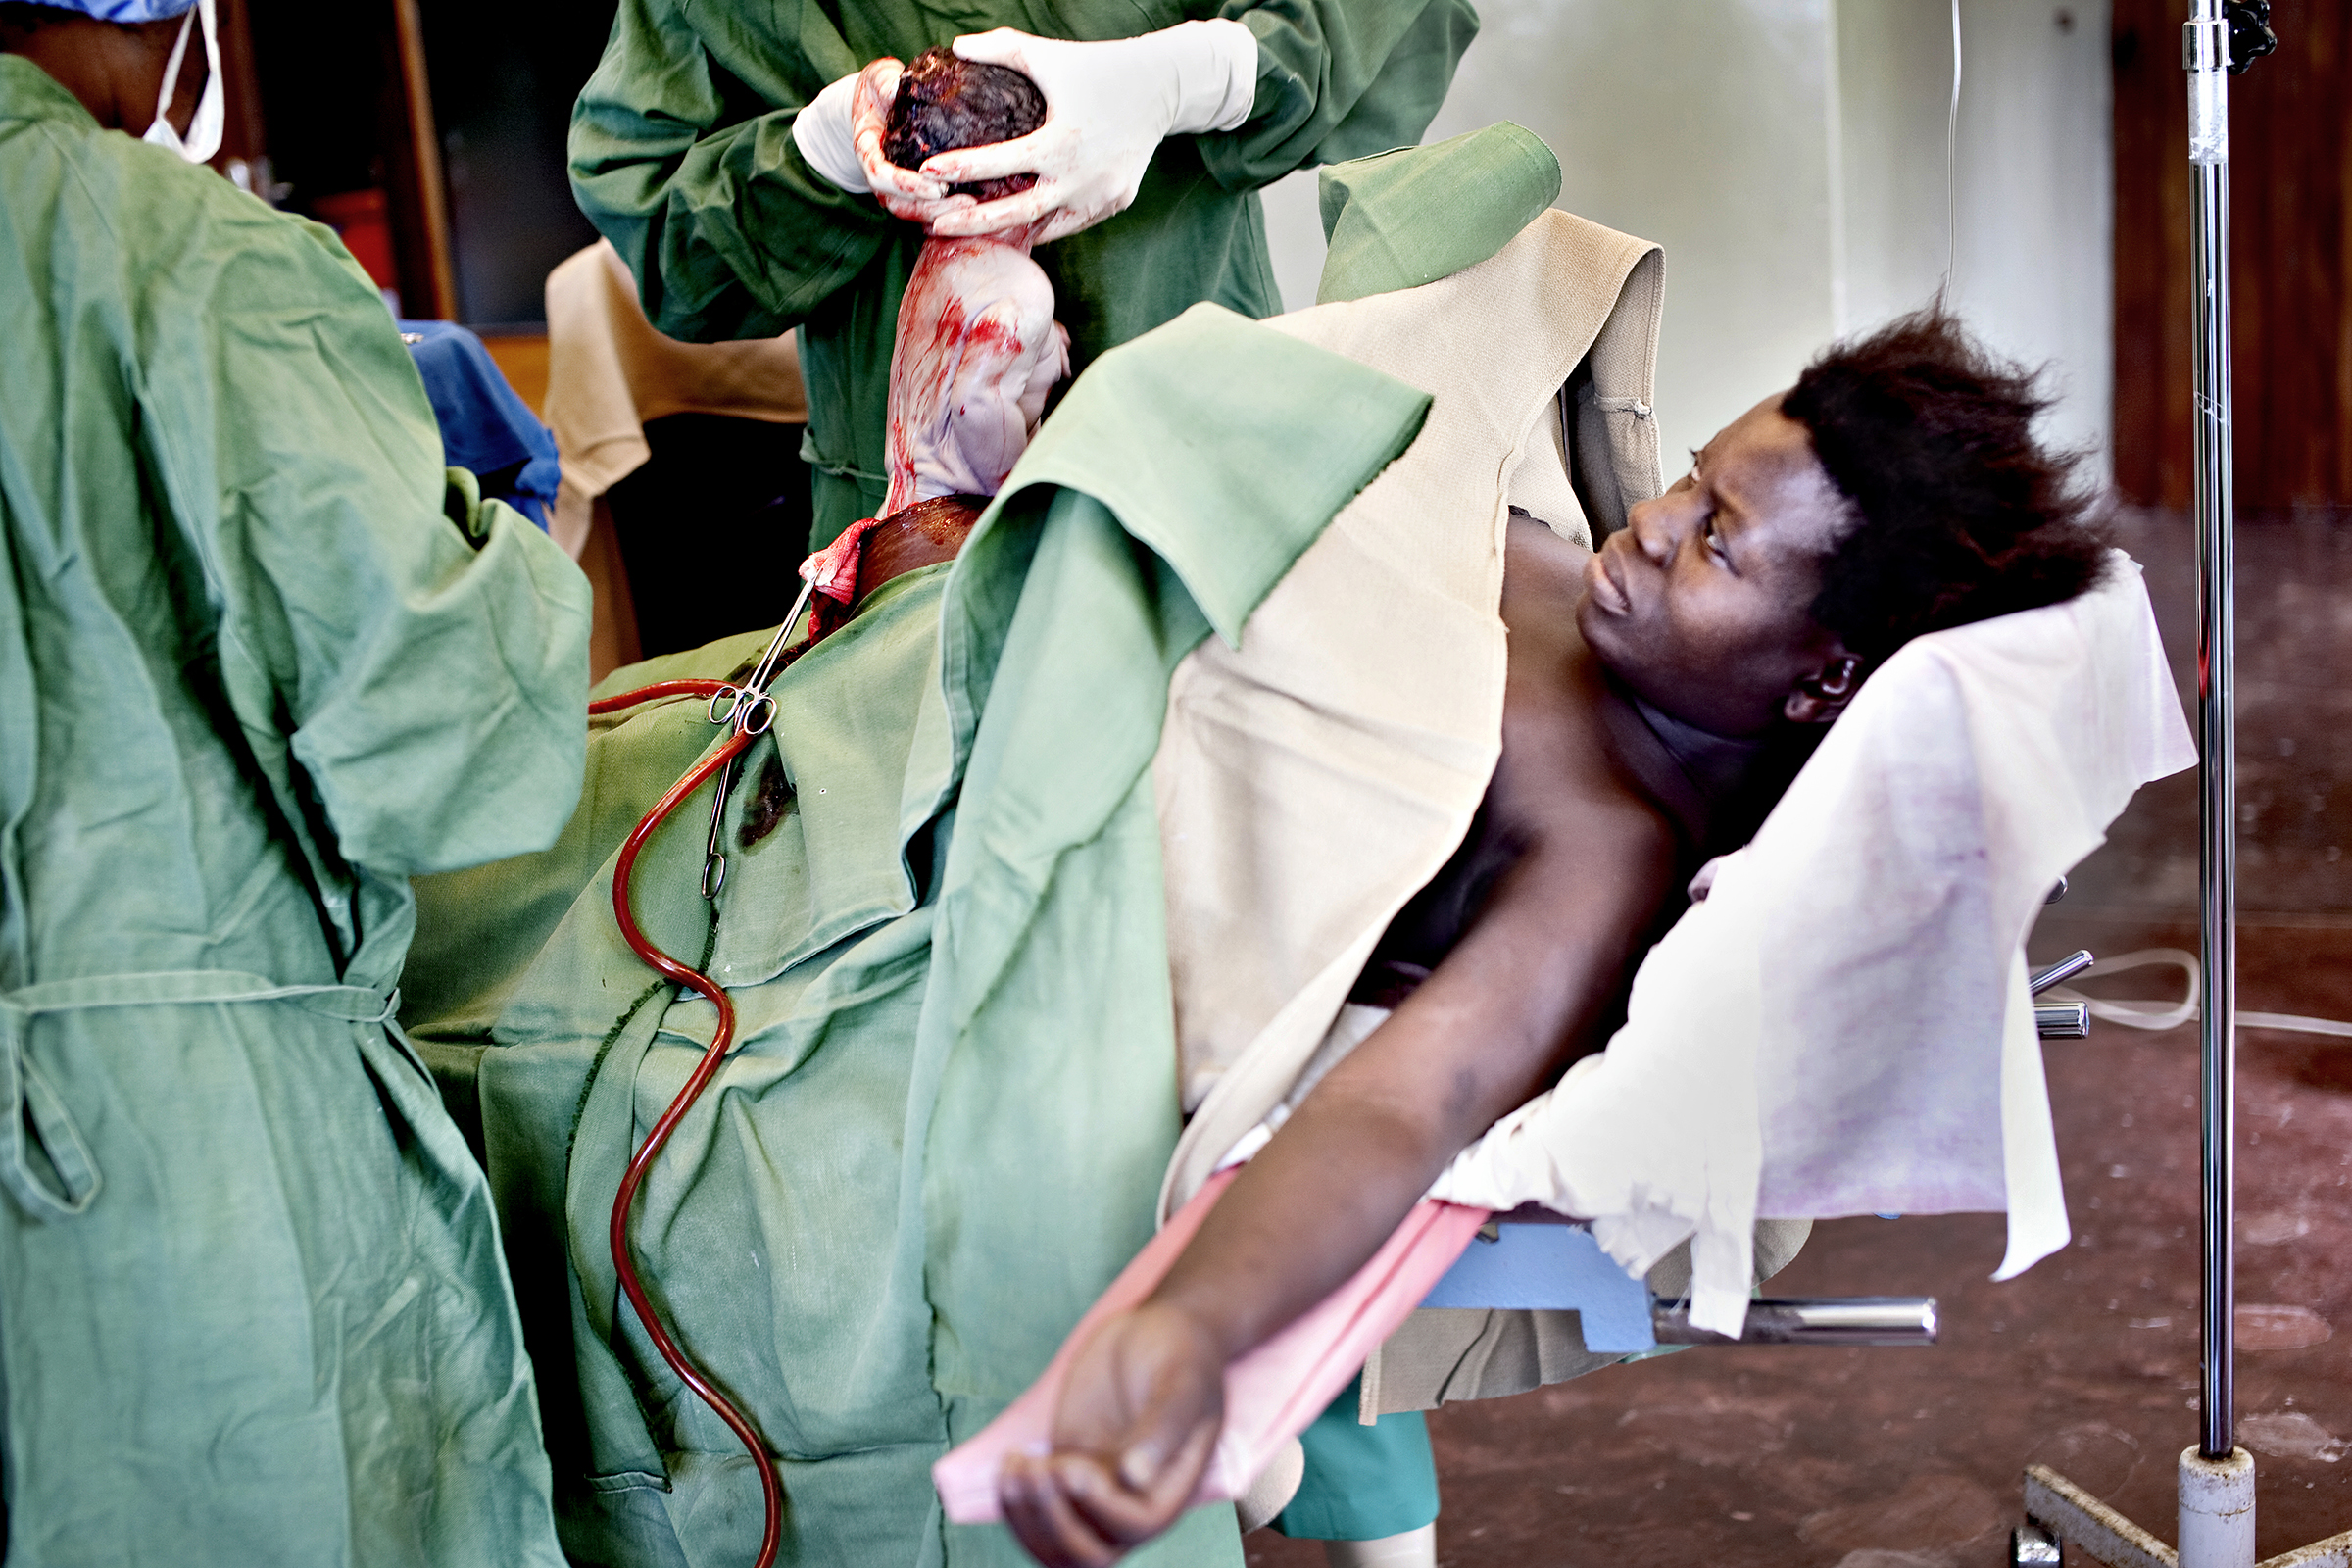 St. Joseph’s Hospital, Chiradzulu, Malawi, 2010: Chrissy Andrew er heldigvis på et sykehus hvor de kan gjennomføre keisersnitt når fødselen ikke går av seg selv. Kun seks prosent av hennes malawiske medsøstre har lege til stede under fødsel. Over 99 prosent av dem som dør av svangerskapsrelaterte komplikasjoner bor i fattige land.